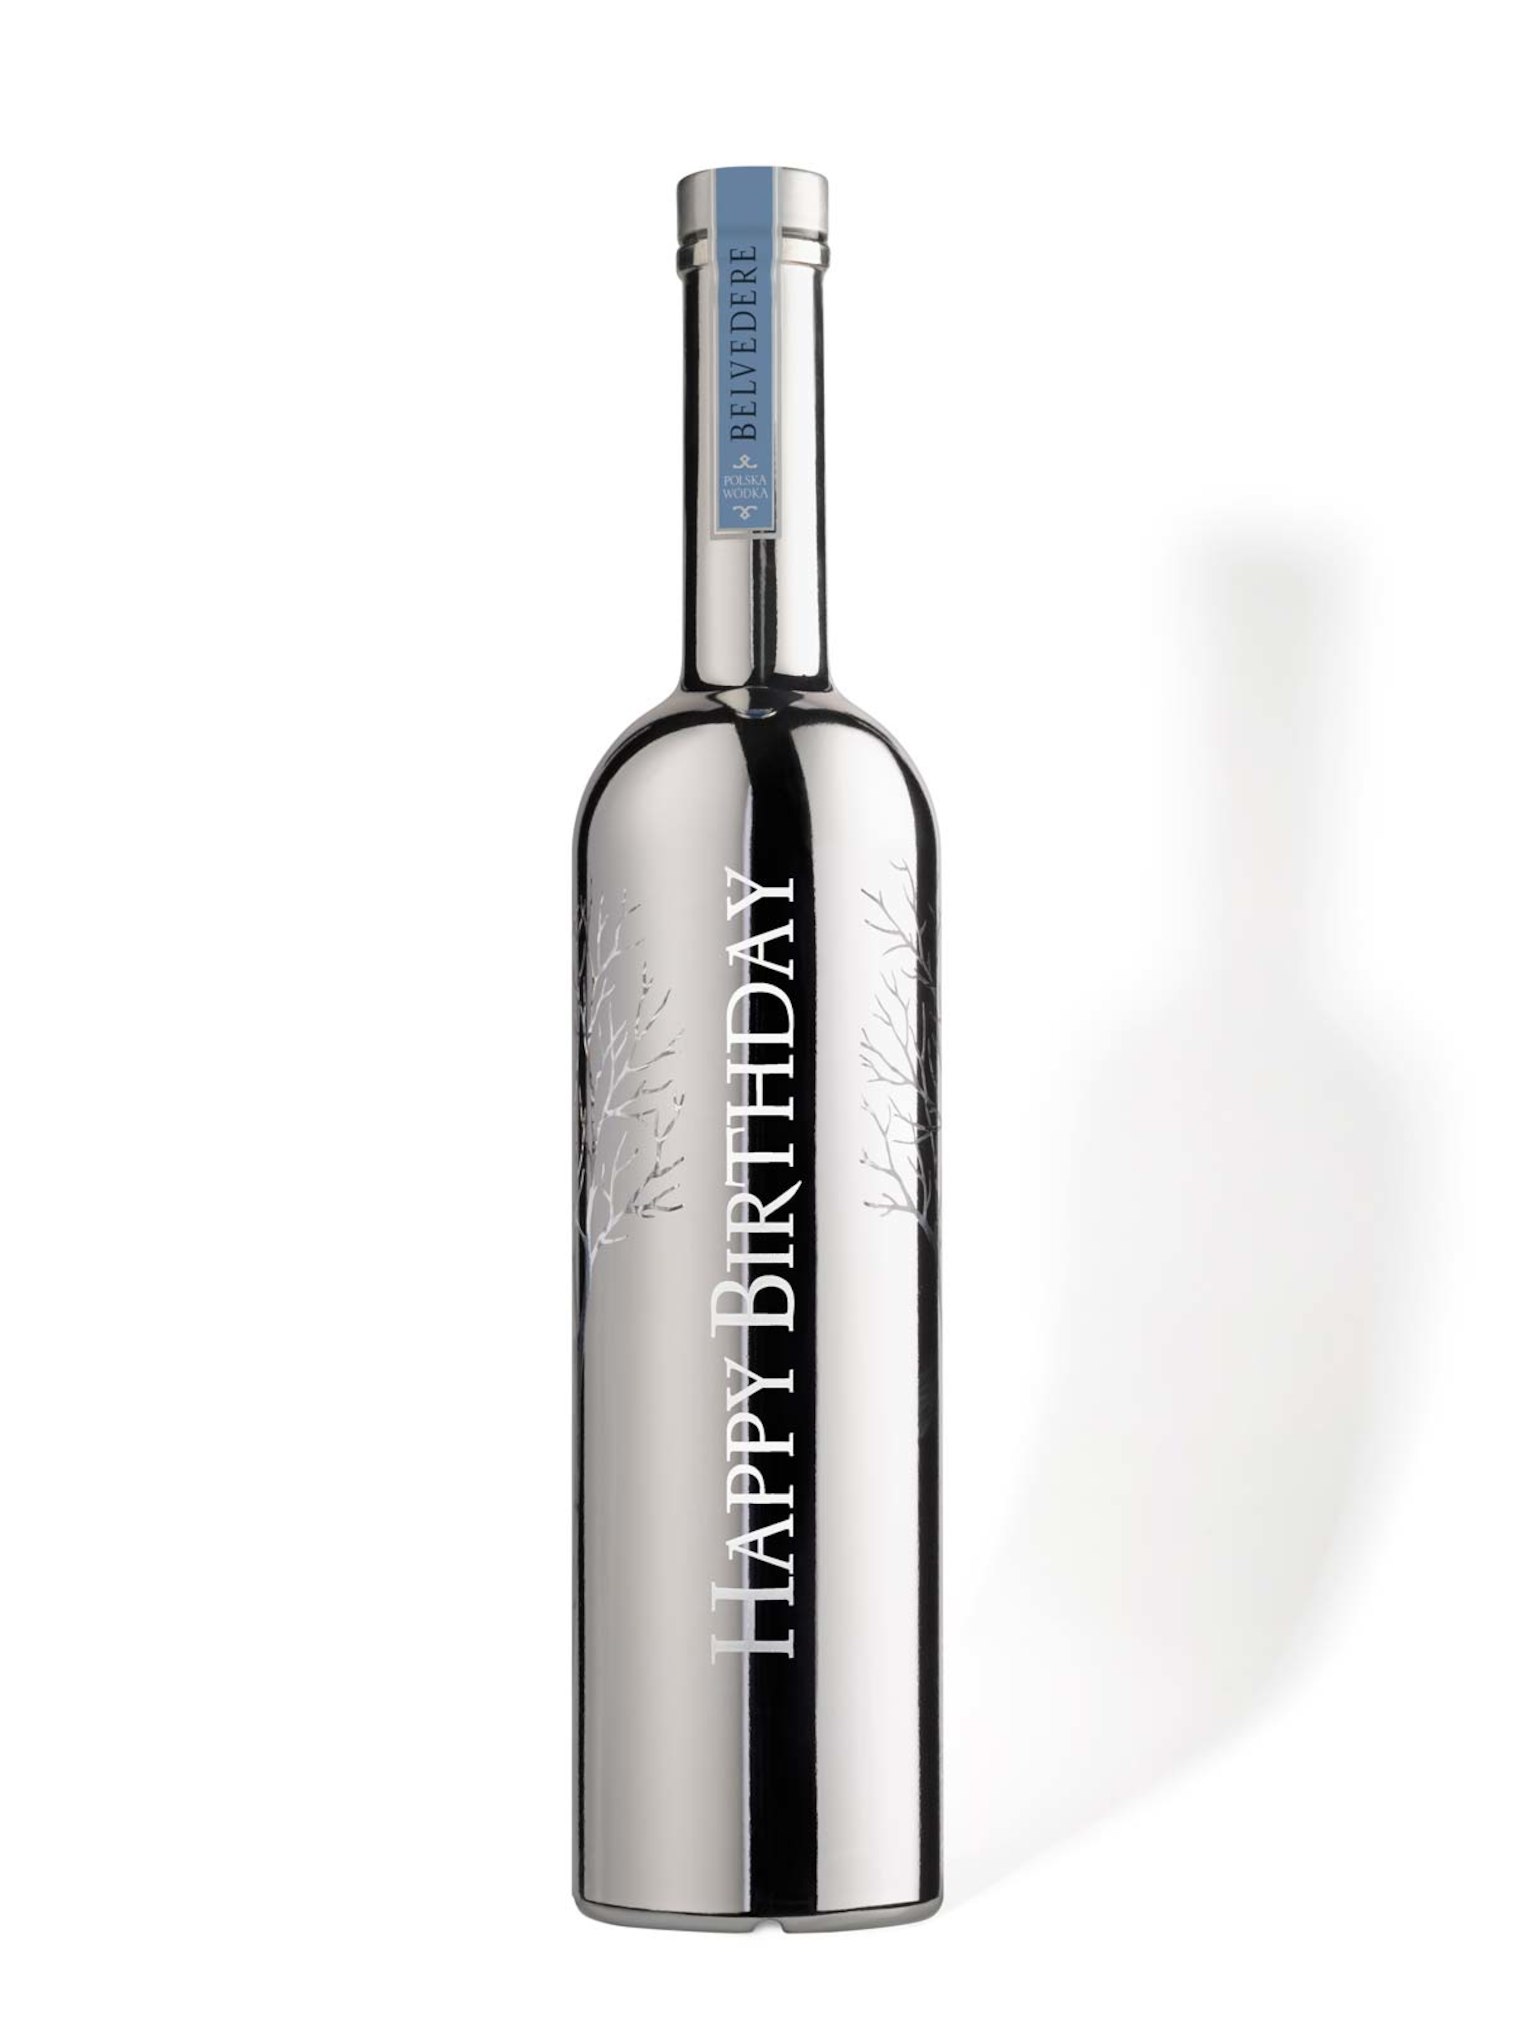 Belvedere Vodka Silver Sabre Edition 1,75 ltr.